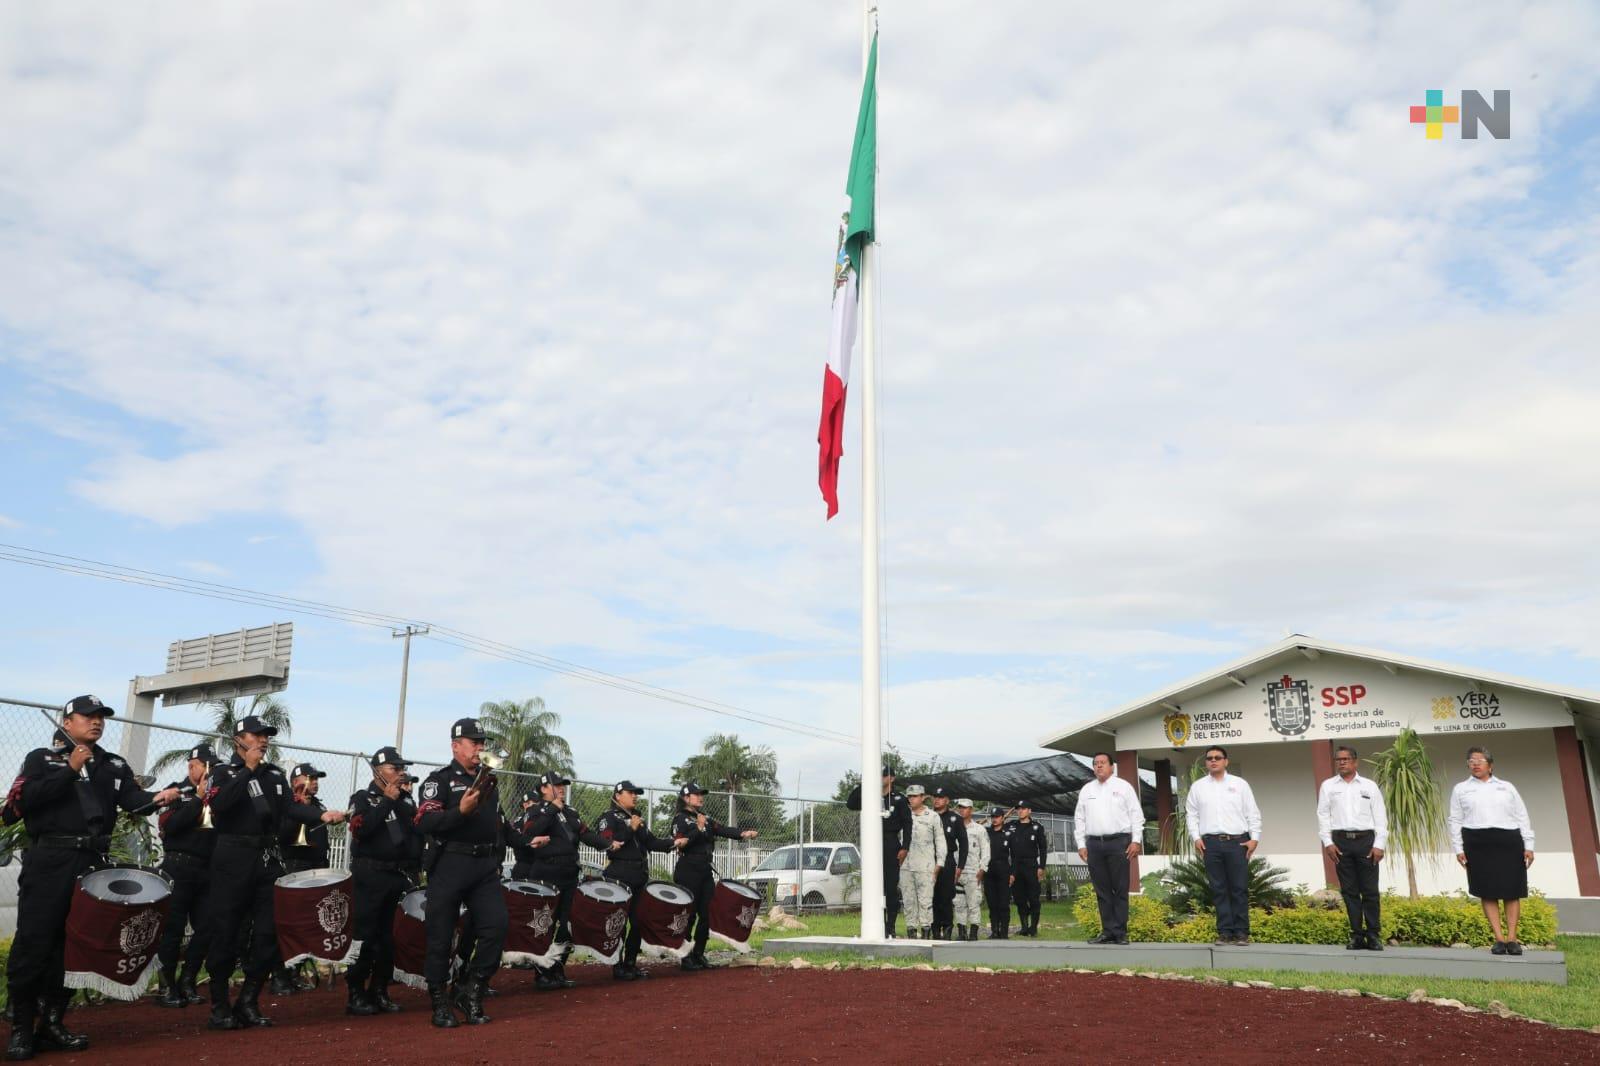 Integrantes del ayuntamiento de Úrsulo Galván realizan honores a la bandera en módulo de vigilancia SSP, en Tamarindo